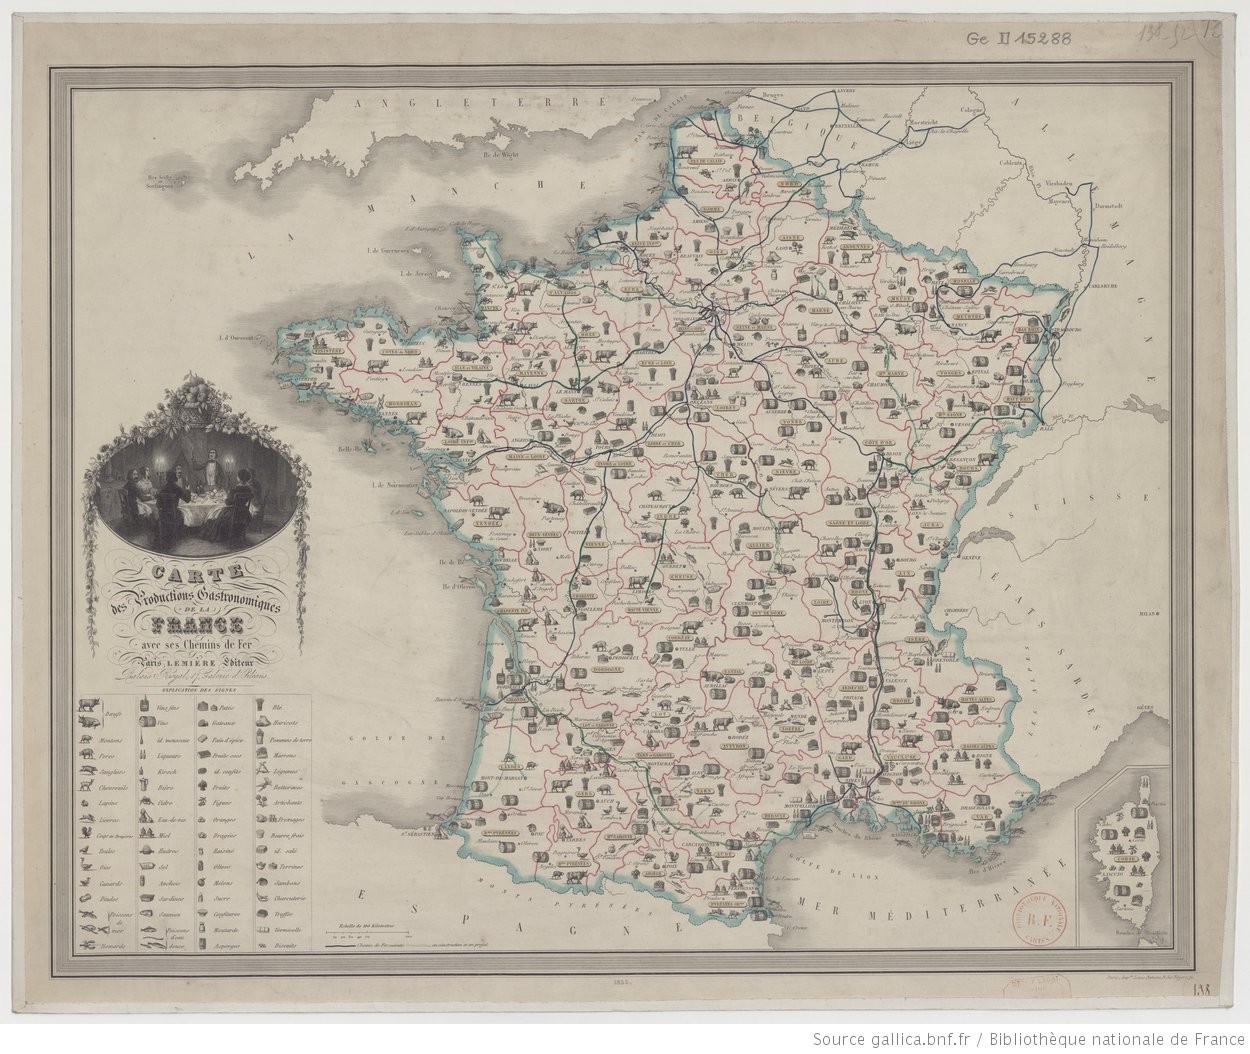 Fig. 1-6: http://lenamk.site/memoire/Redaction/img/CarteGastronomique_1852_Lemiere.jpeg